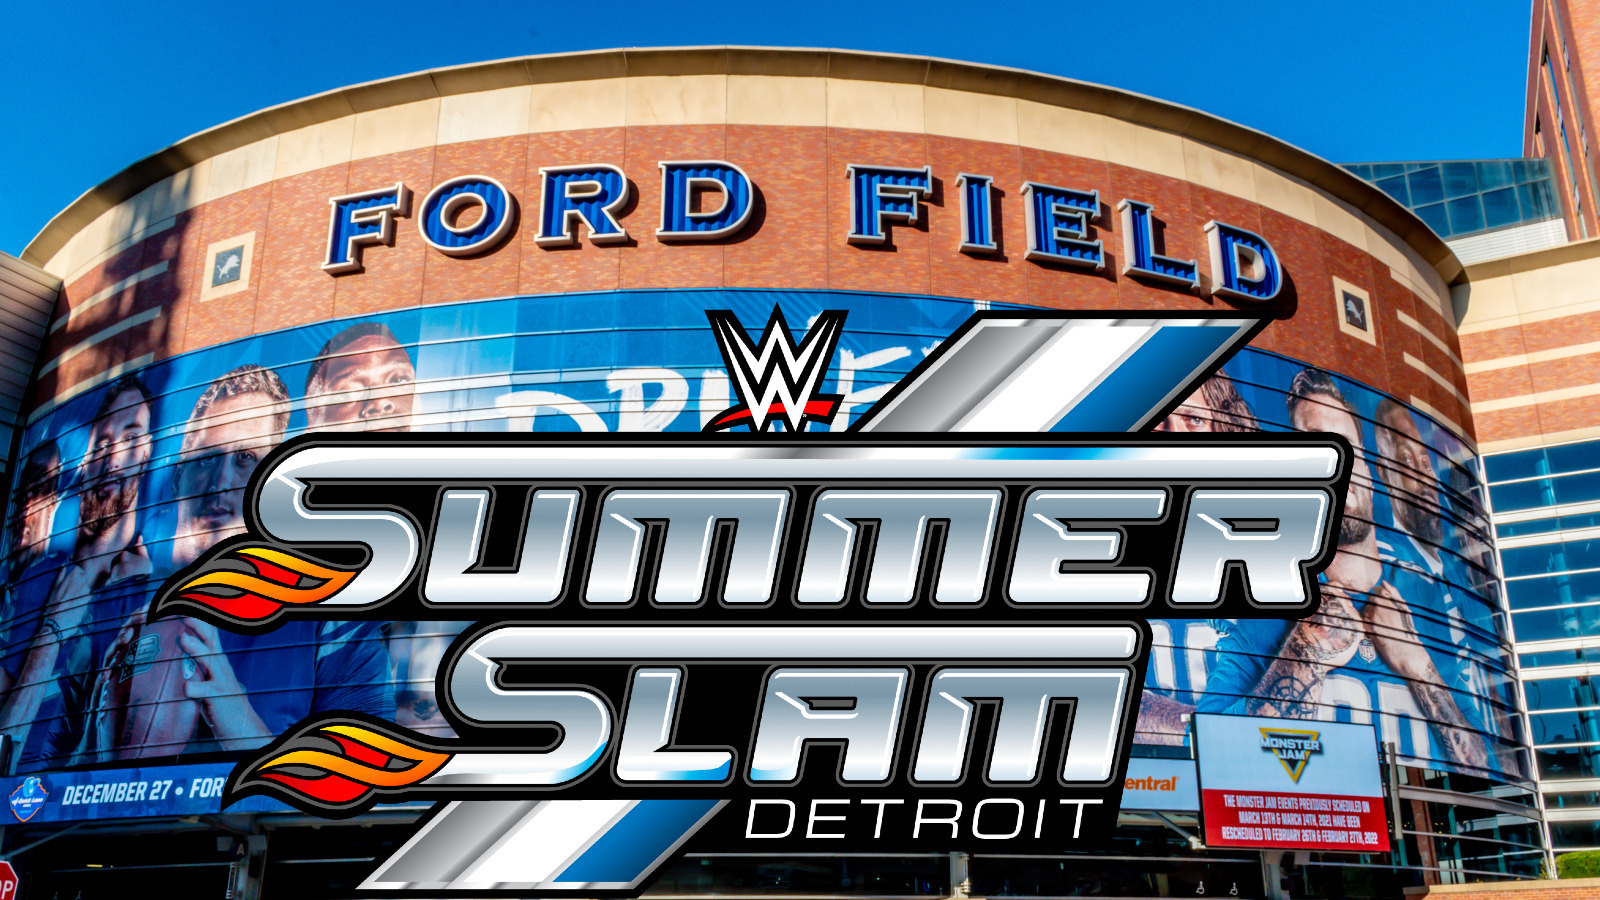 Según los informes, el nombre principal de la WWE se vio en Detroit antes de SummerSlam